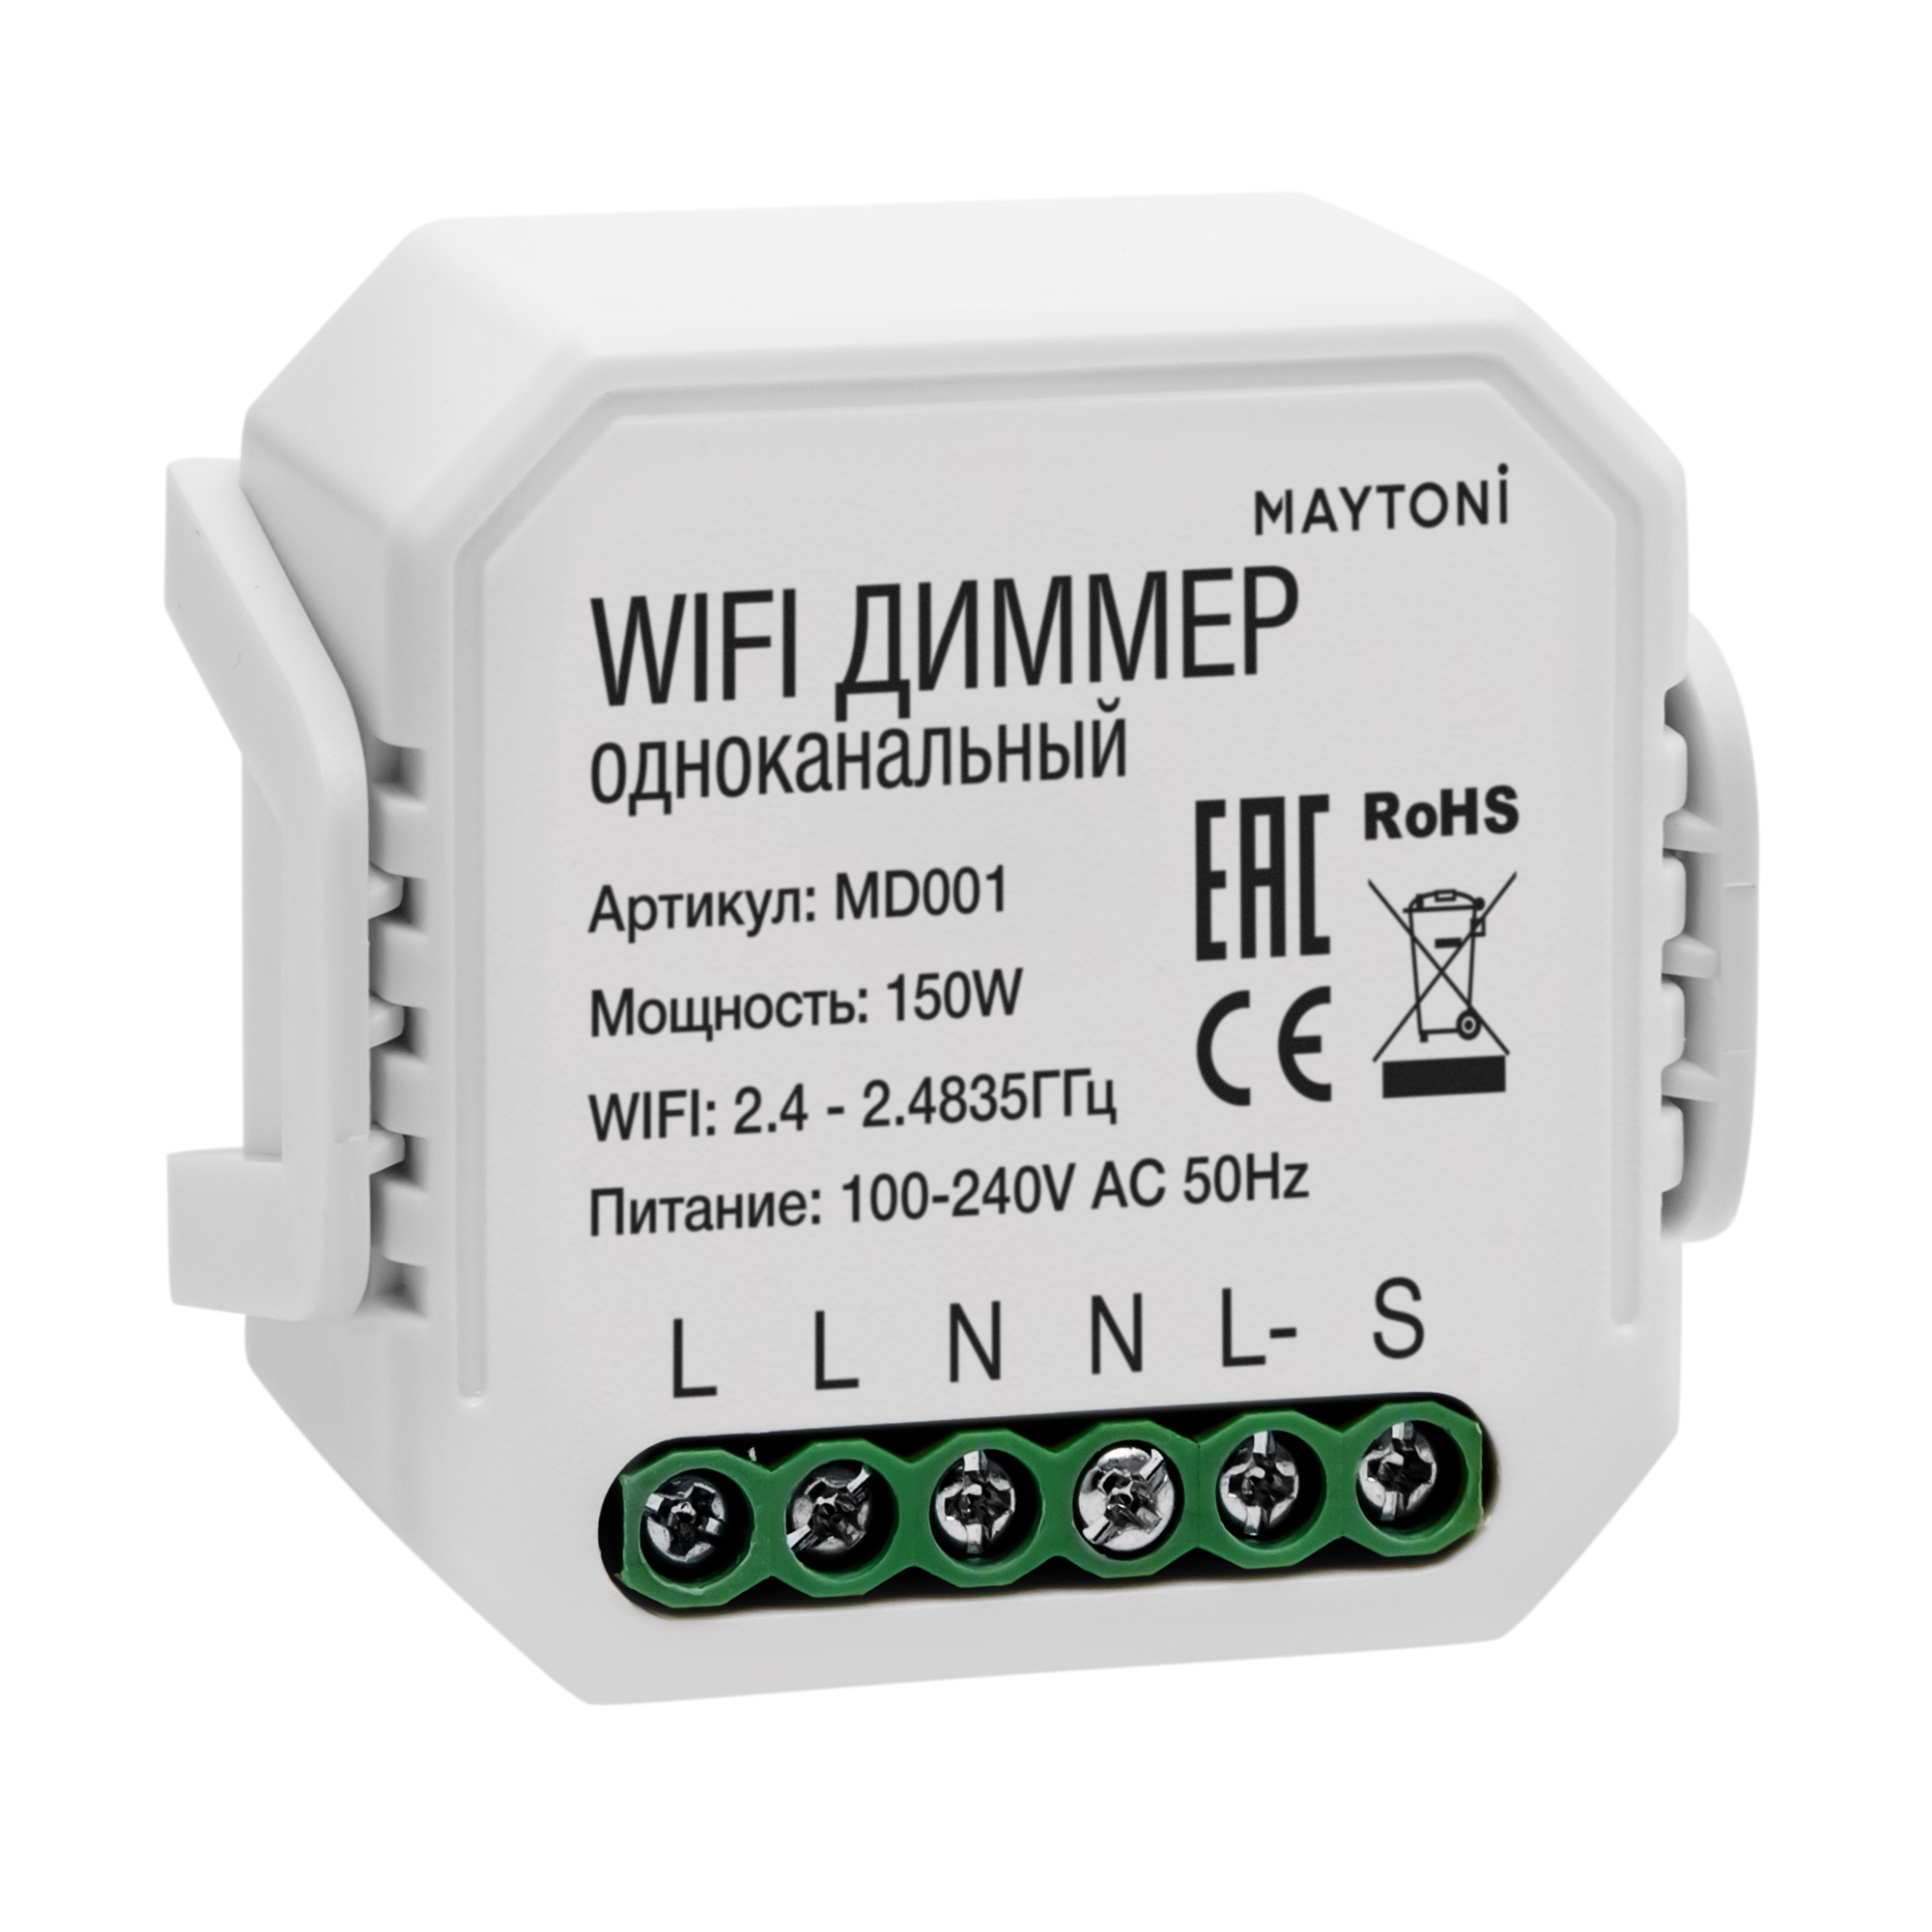 Wi-Fi  Maytoni Wi-Fi  MD001